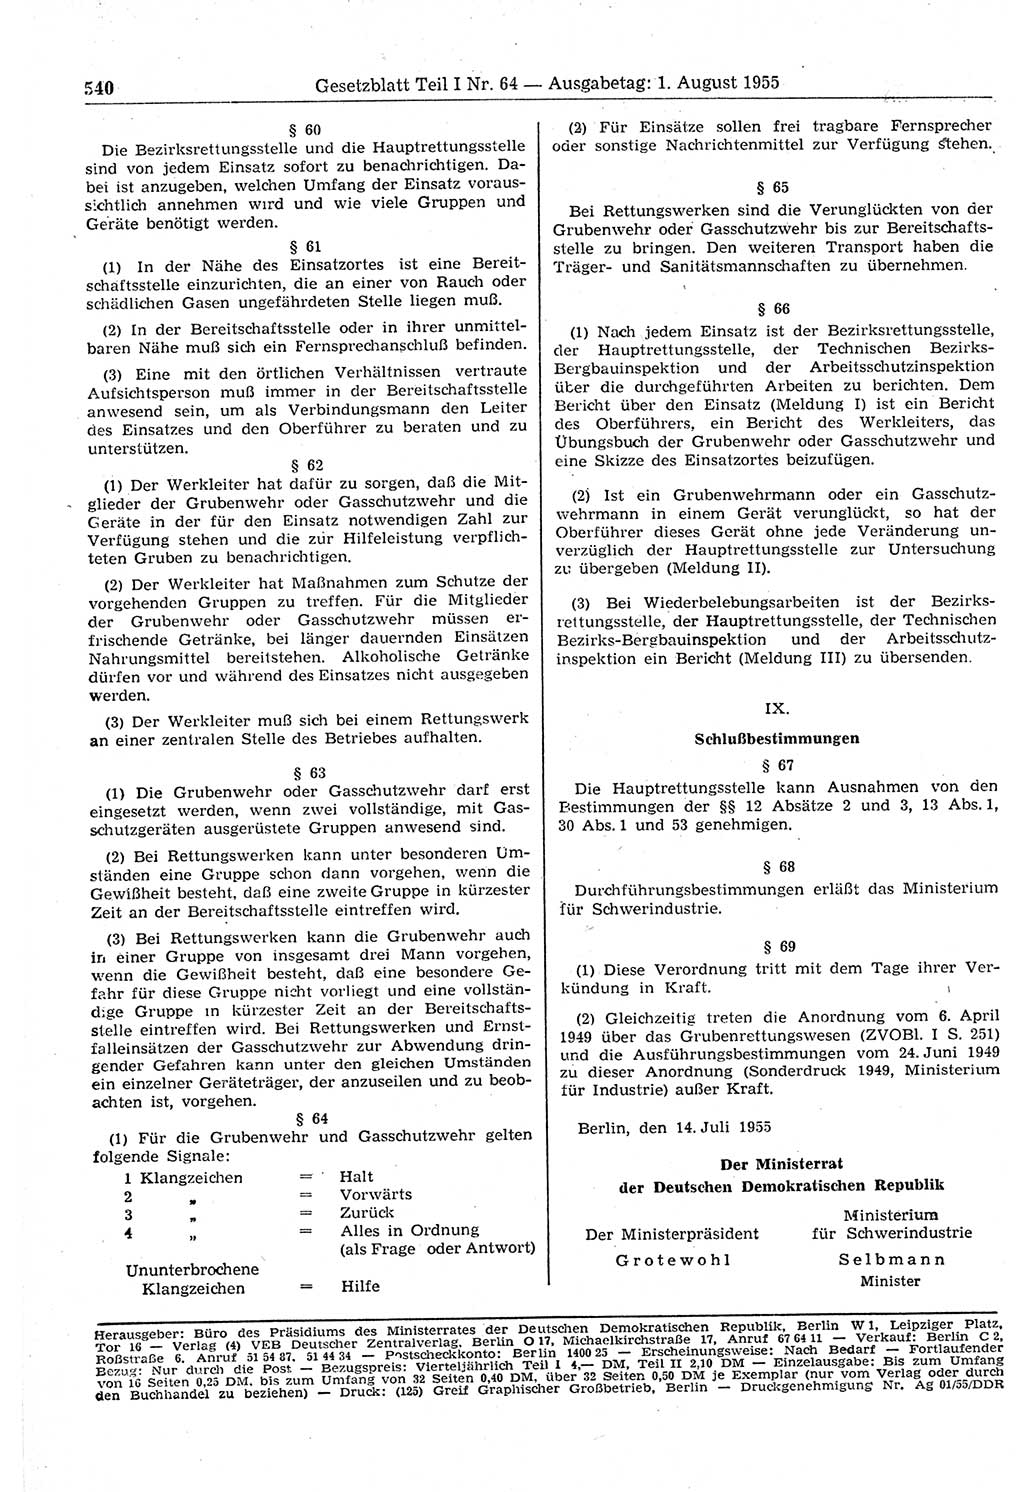 Gesetzblatt (GBl.) der Deutschen Demokratischen Republik (DDR) Teil Ⅰ 1955, Seite 540 (GBl. DDR Ⅰ 1955, S. 540)